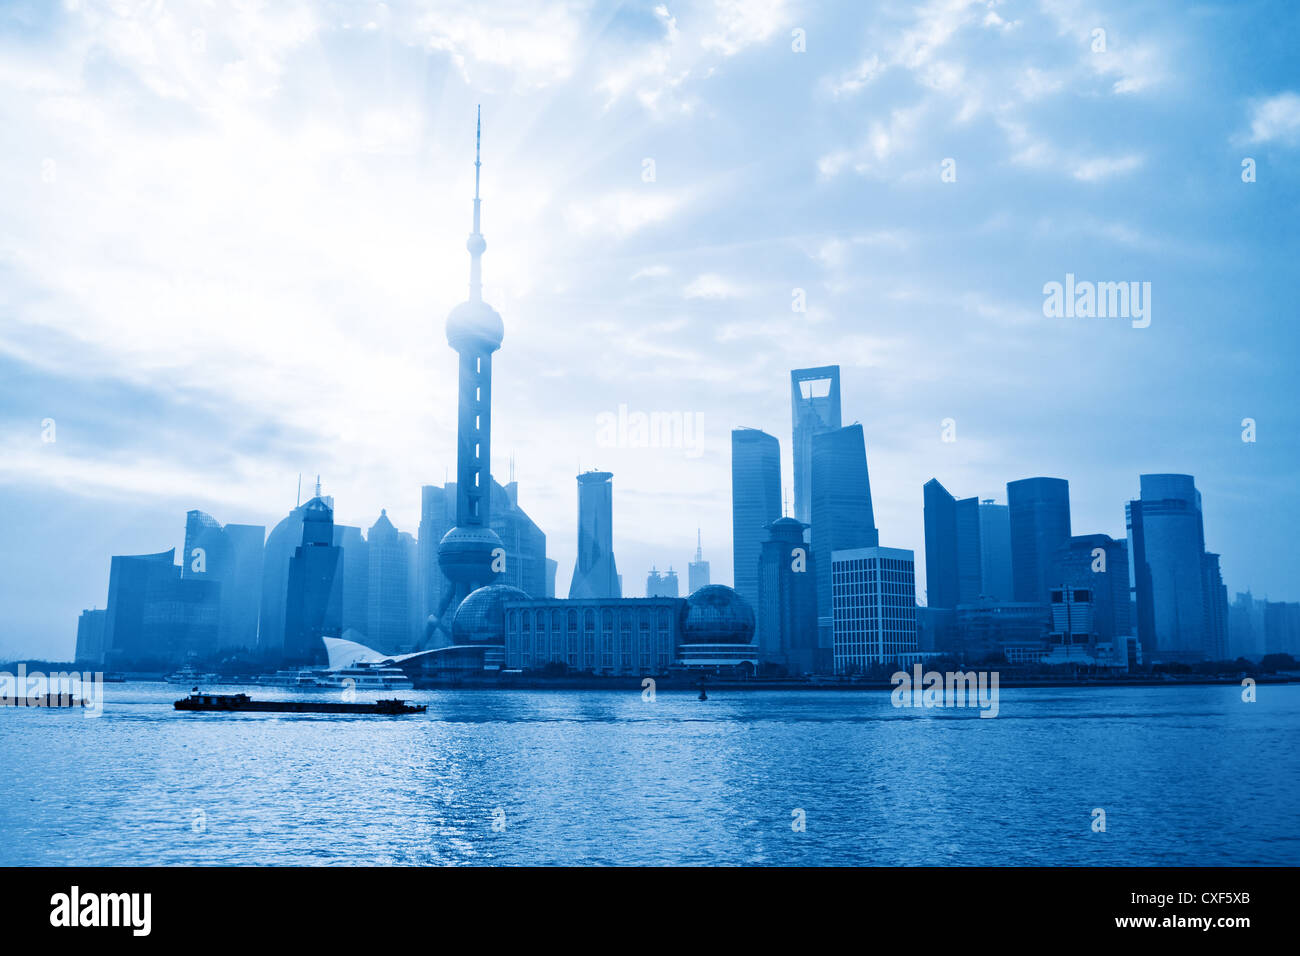 shanghai skyline at sunrise Stock Photo